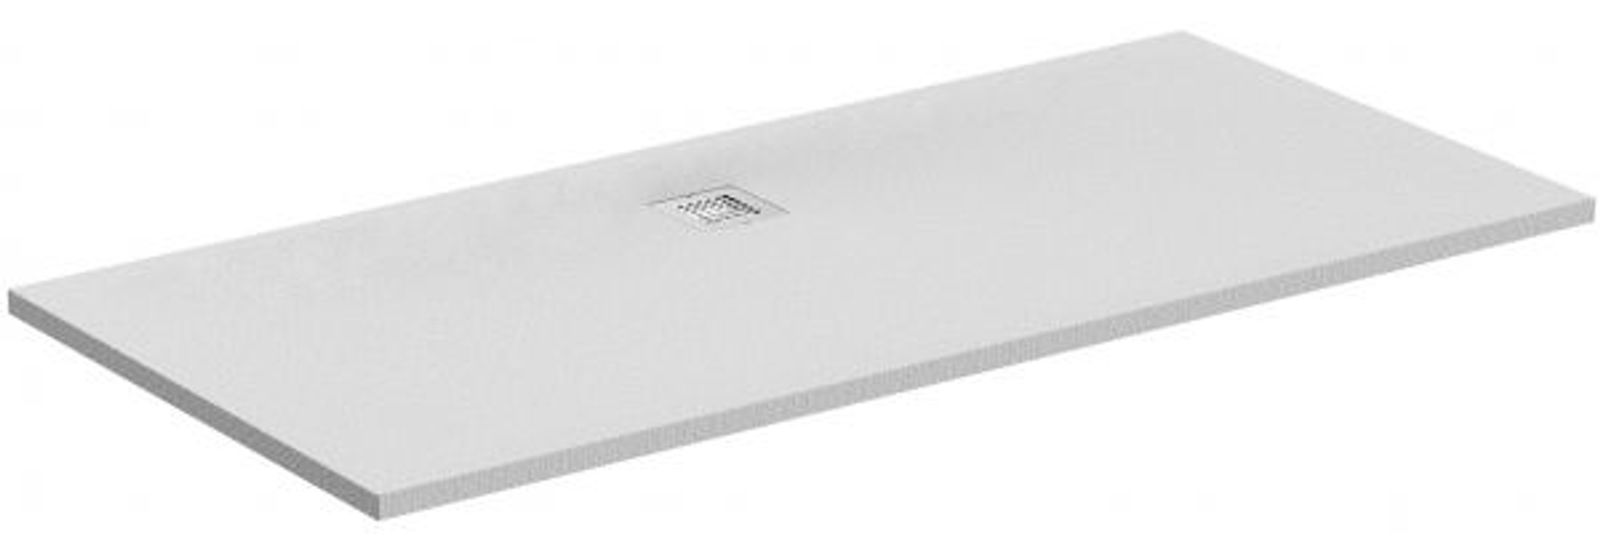 Ideal Standard Rechteck-Brausewanne Ultr 2000x900x30 mm Carraraweiß